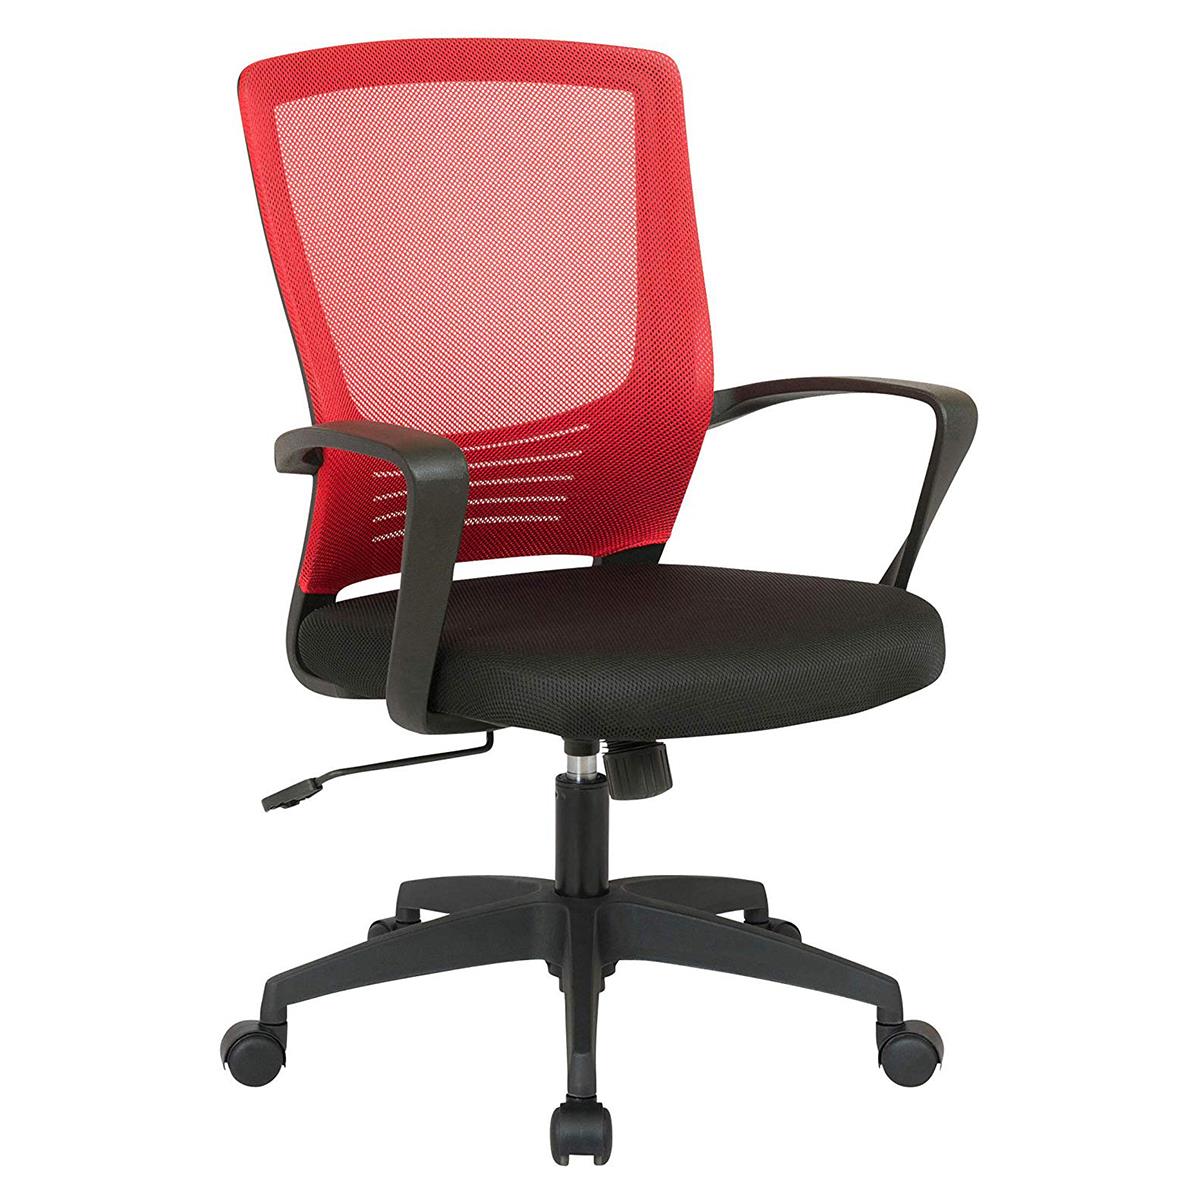 Chaise de Bureau MALIBU, Design moderne et Ergonomique, Maille Respirable, Rouge